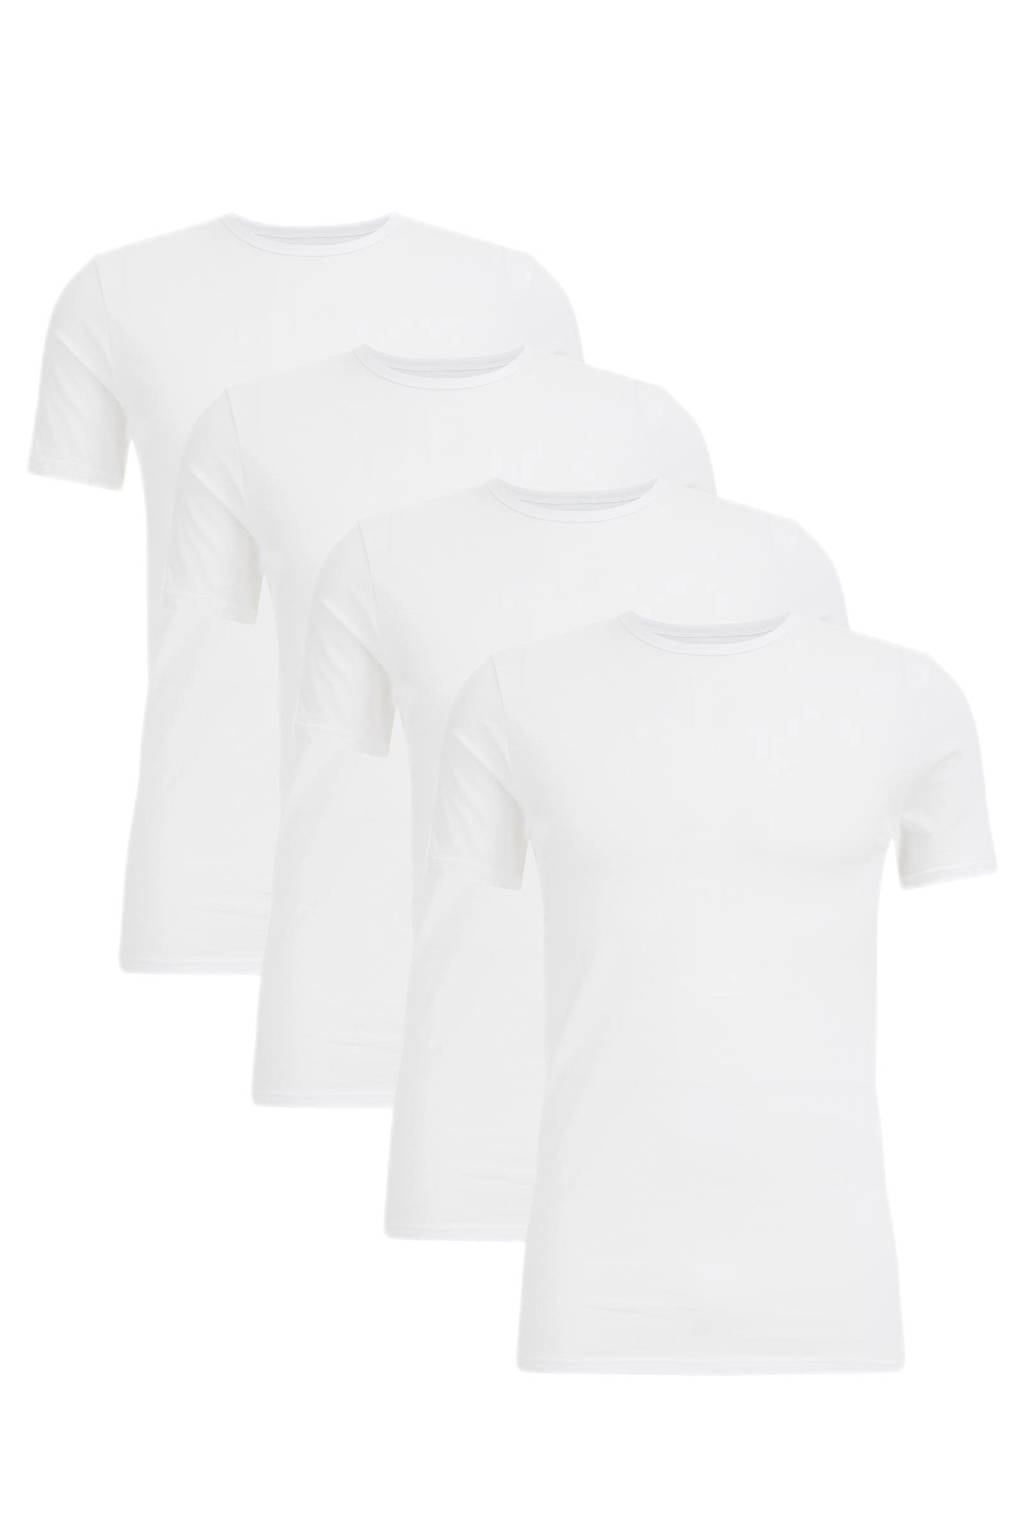 WE Fashion T-shirt wit (set van 4), Wit